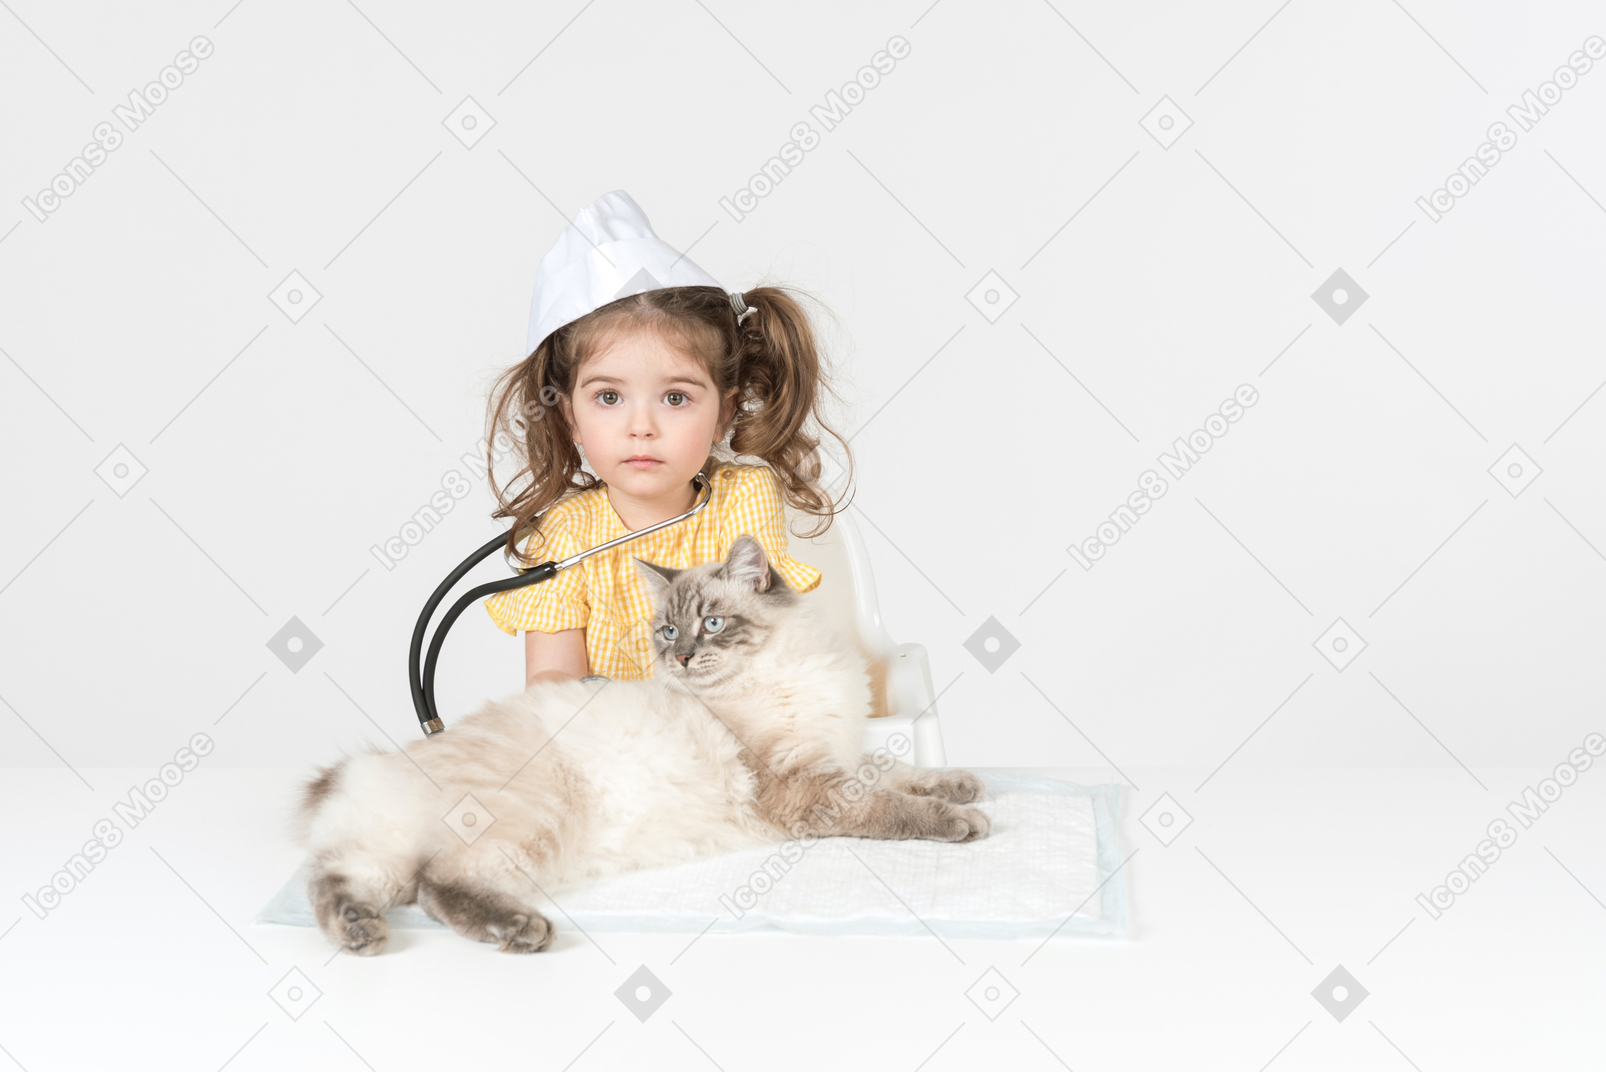 청진기와 고양이 치료 의료 모자를 쓰고 어린 아이 소녀